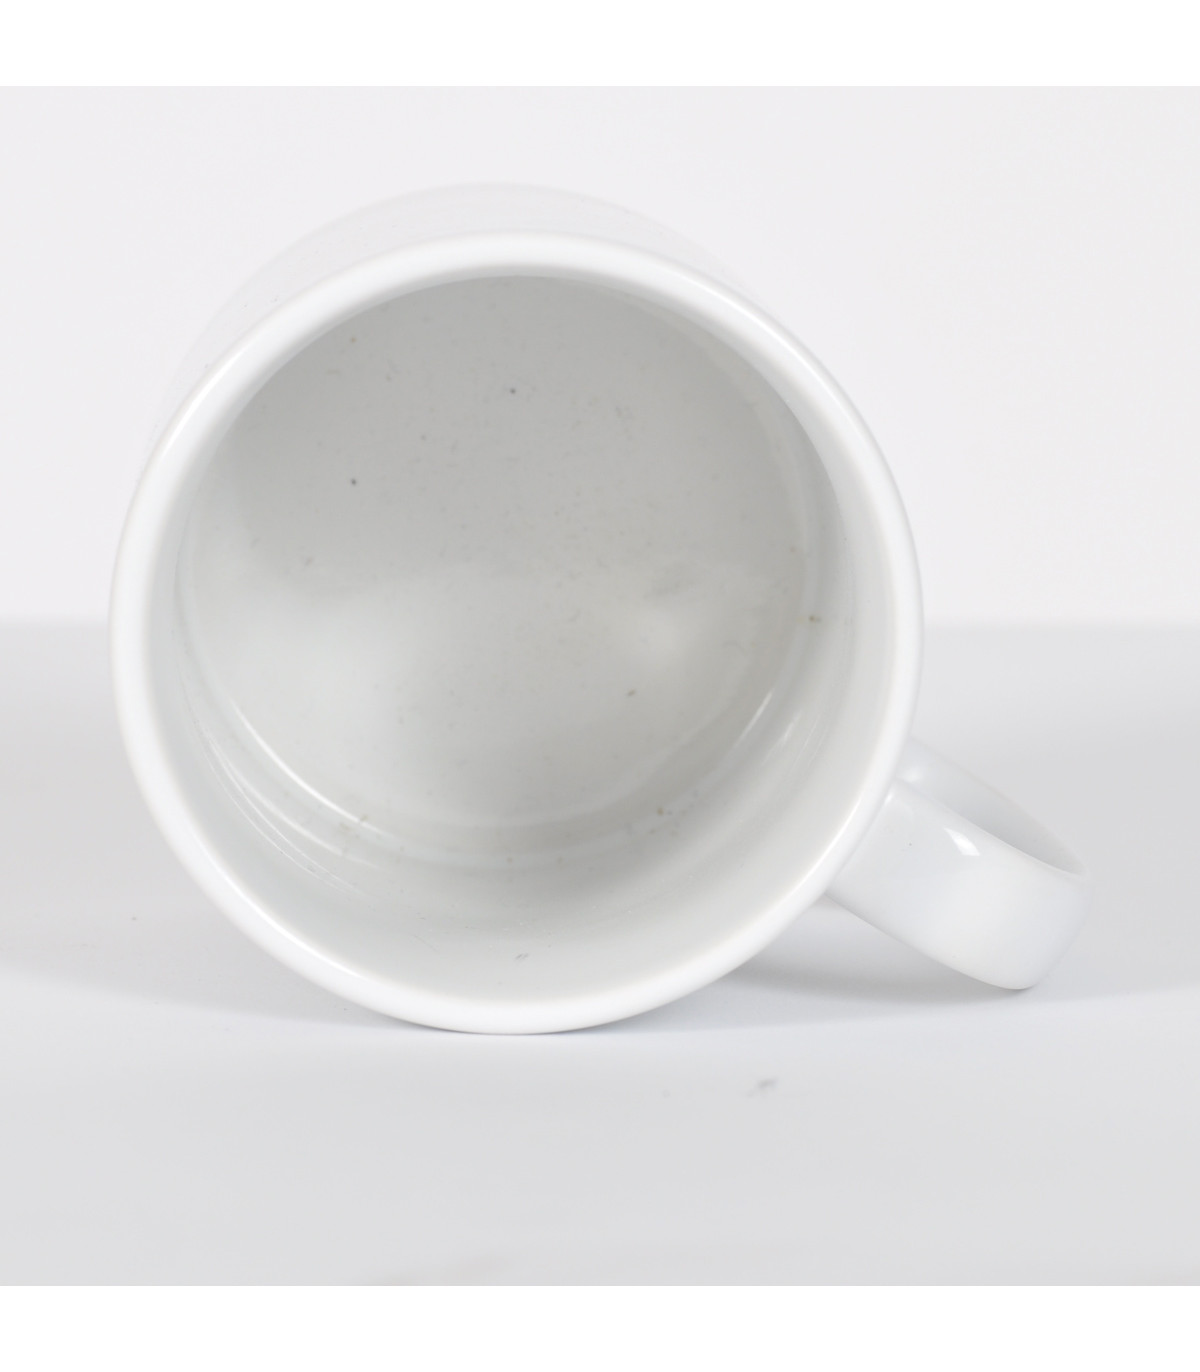 Grand choix de tasses à thé de qualité en porcelaine motifs originaux